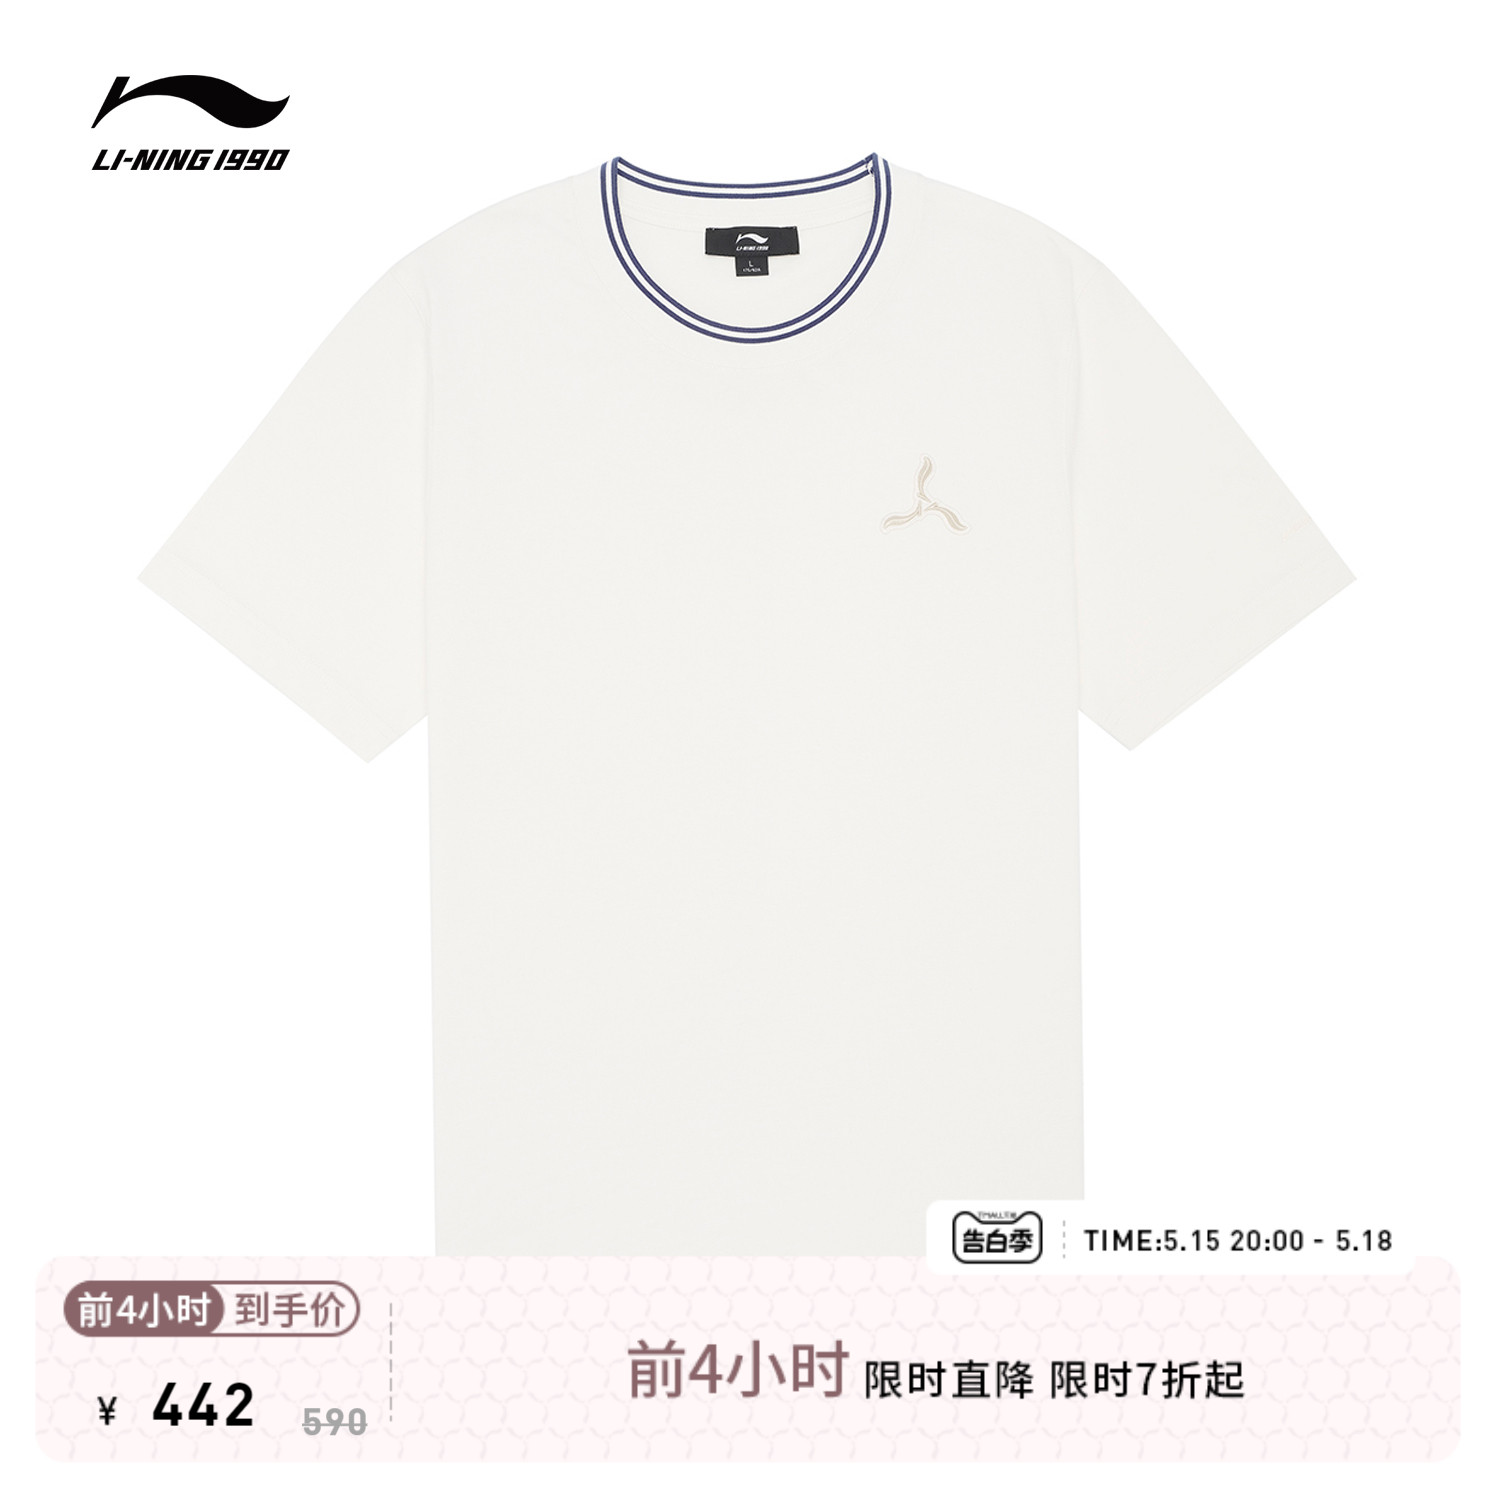 LI-NING1990 男士夏季休闲运动圆领短袖T恤上衣 李宁1990经典系列